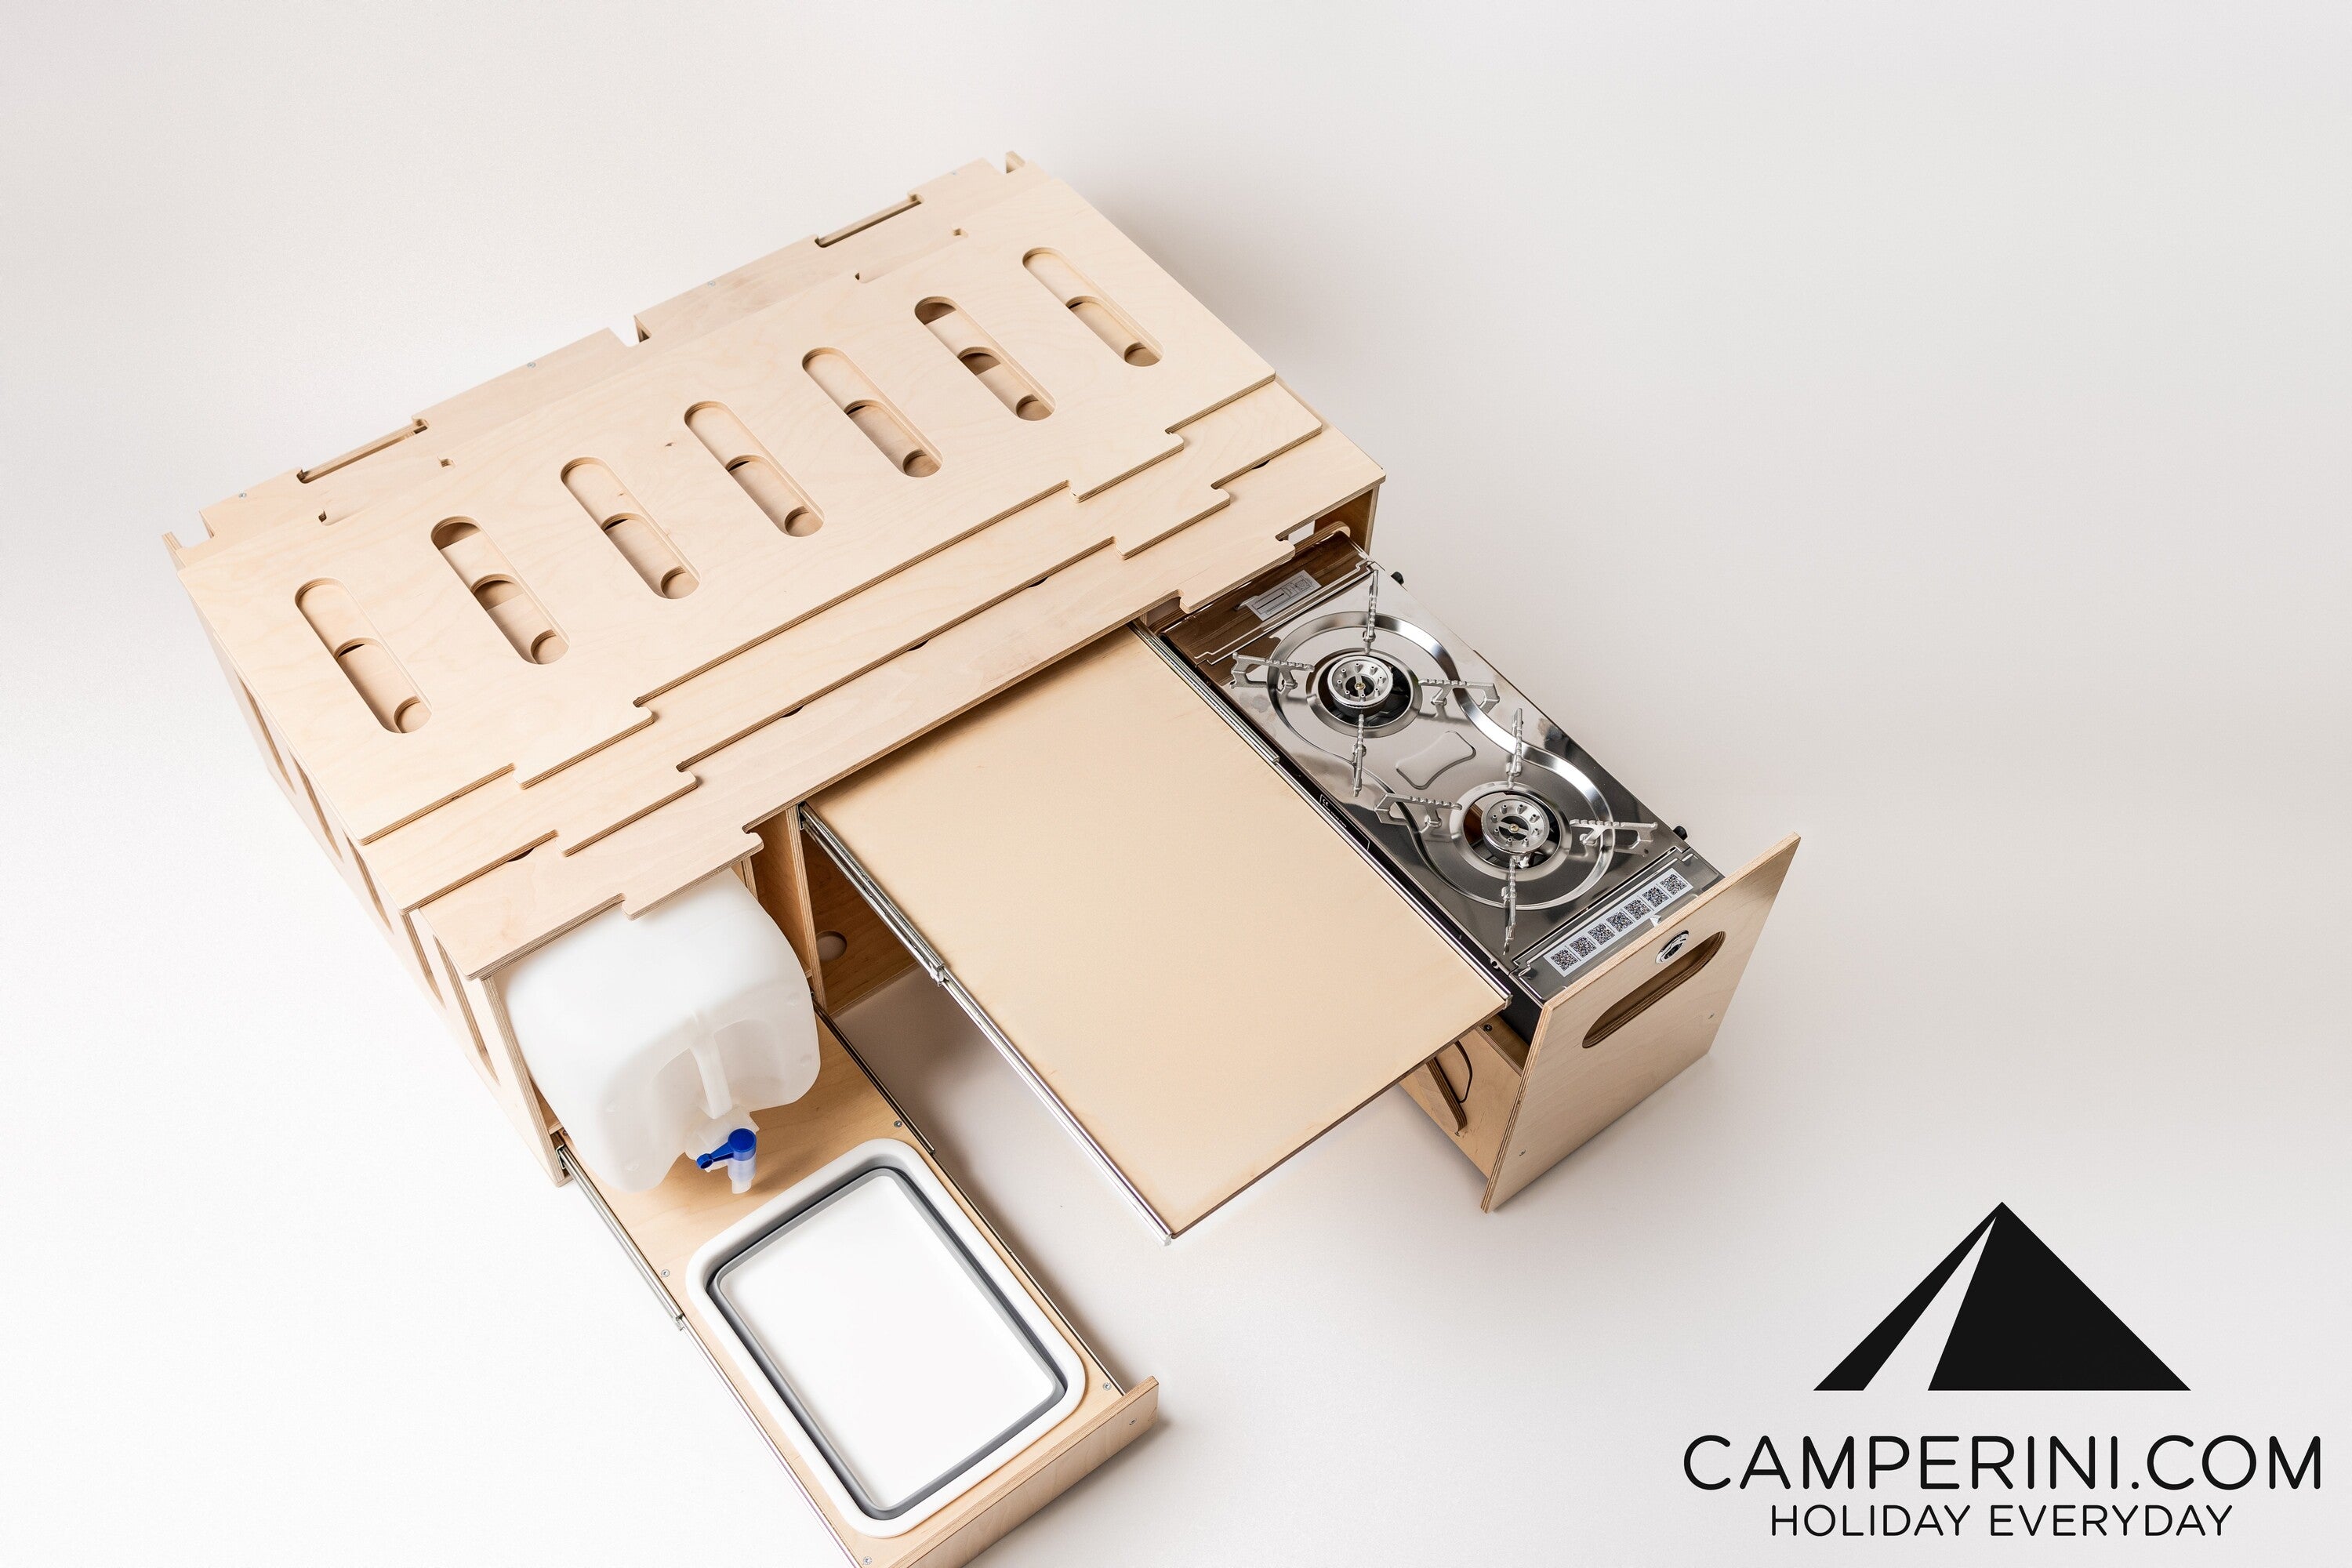 Billede af Camperini VAN4ALL - Campervan Modul i forskellige størrelser - 111 cm bredde x 42 cm højde x 70 cm dybde